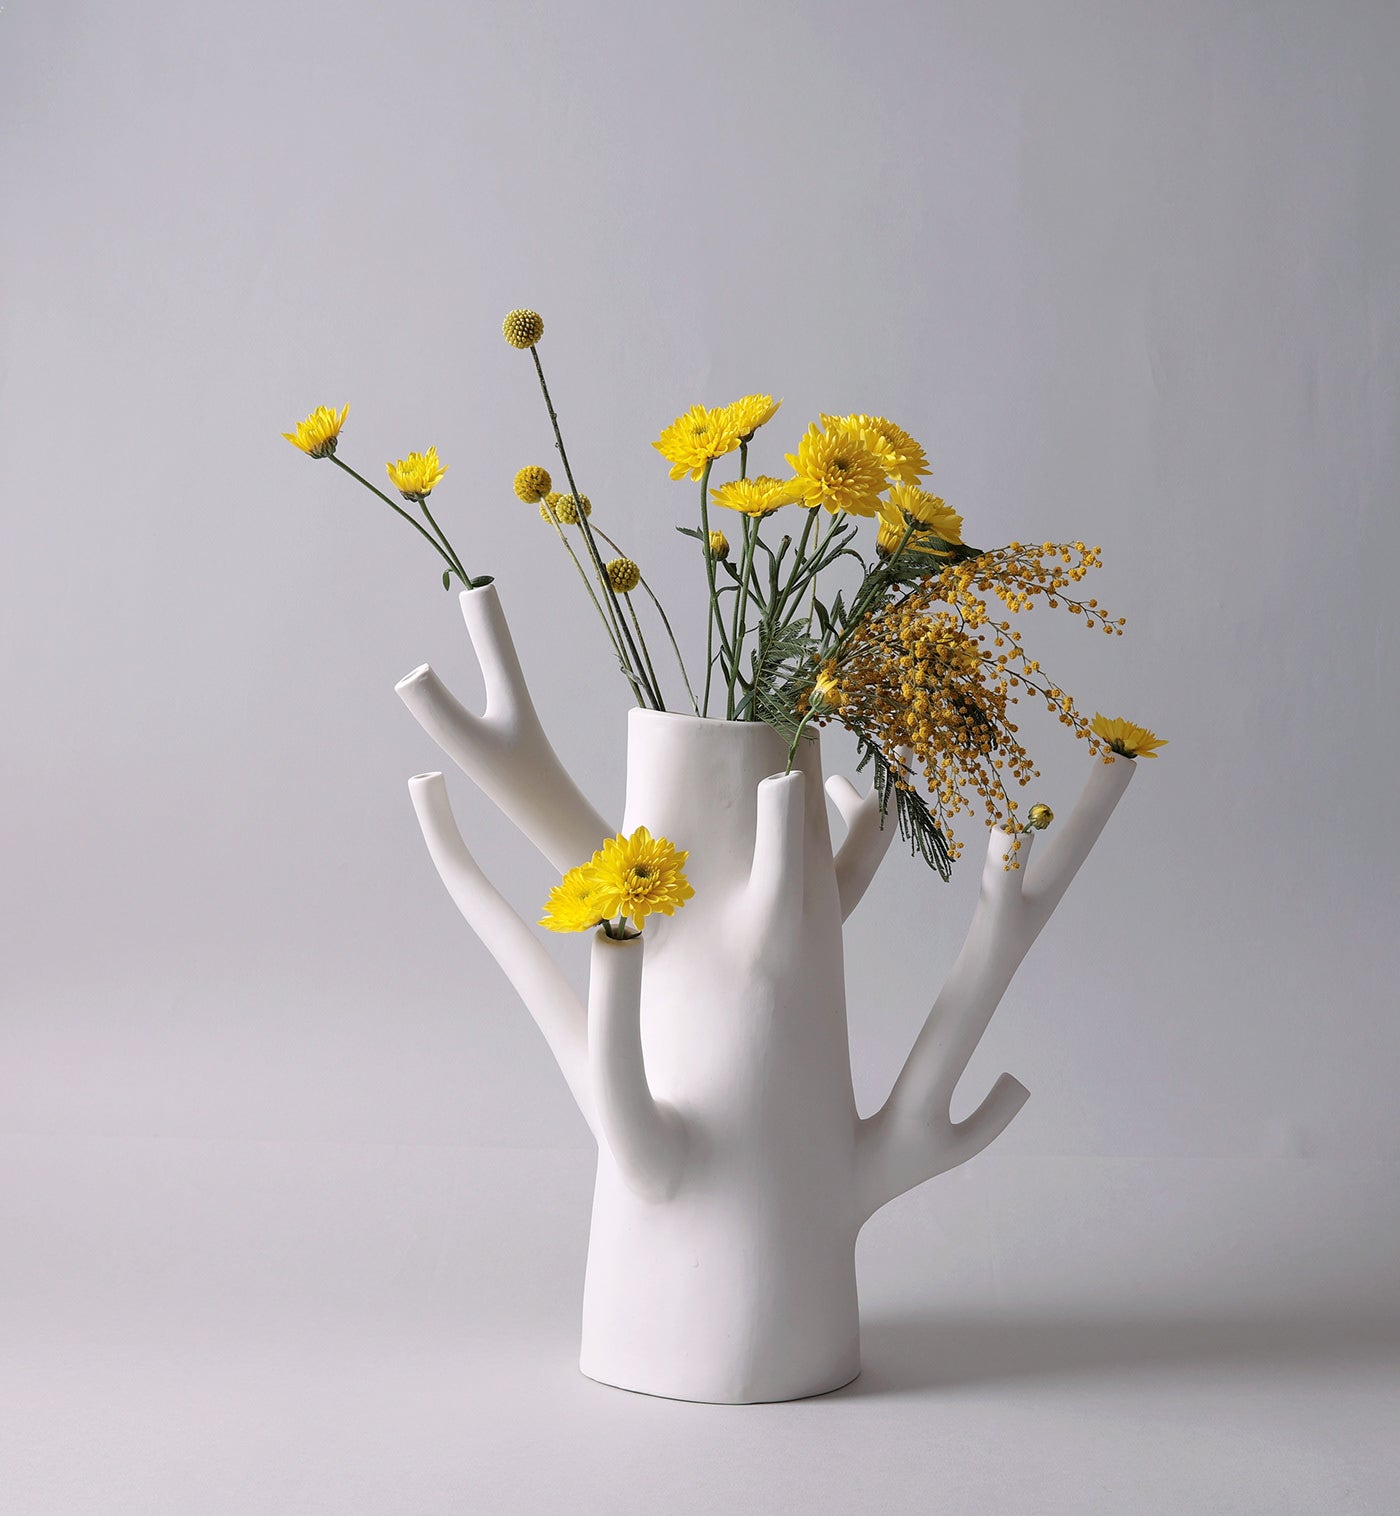 Ceramic vase welcomes unique flower arrangements like as florist